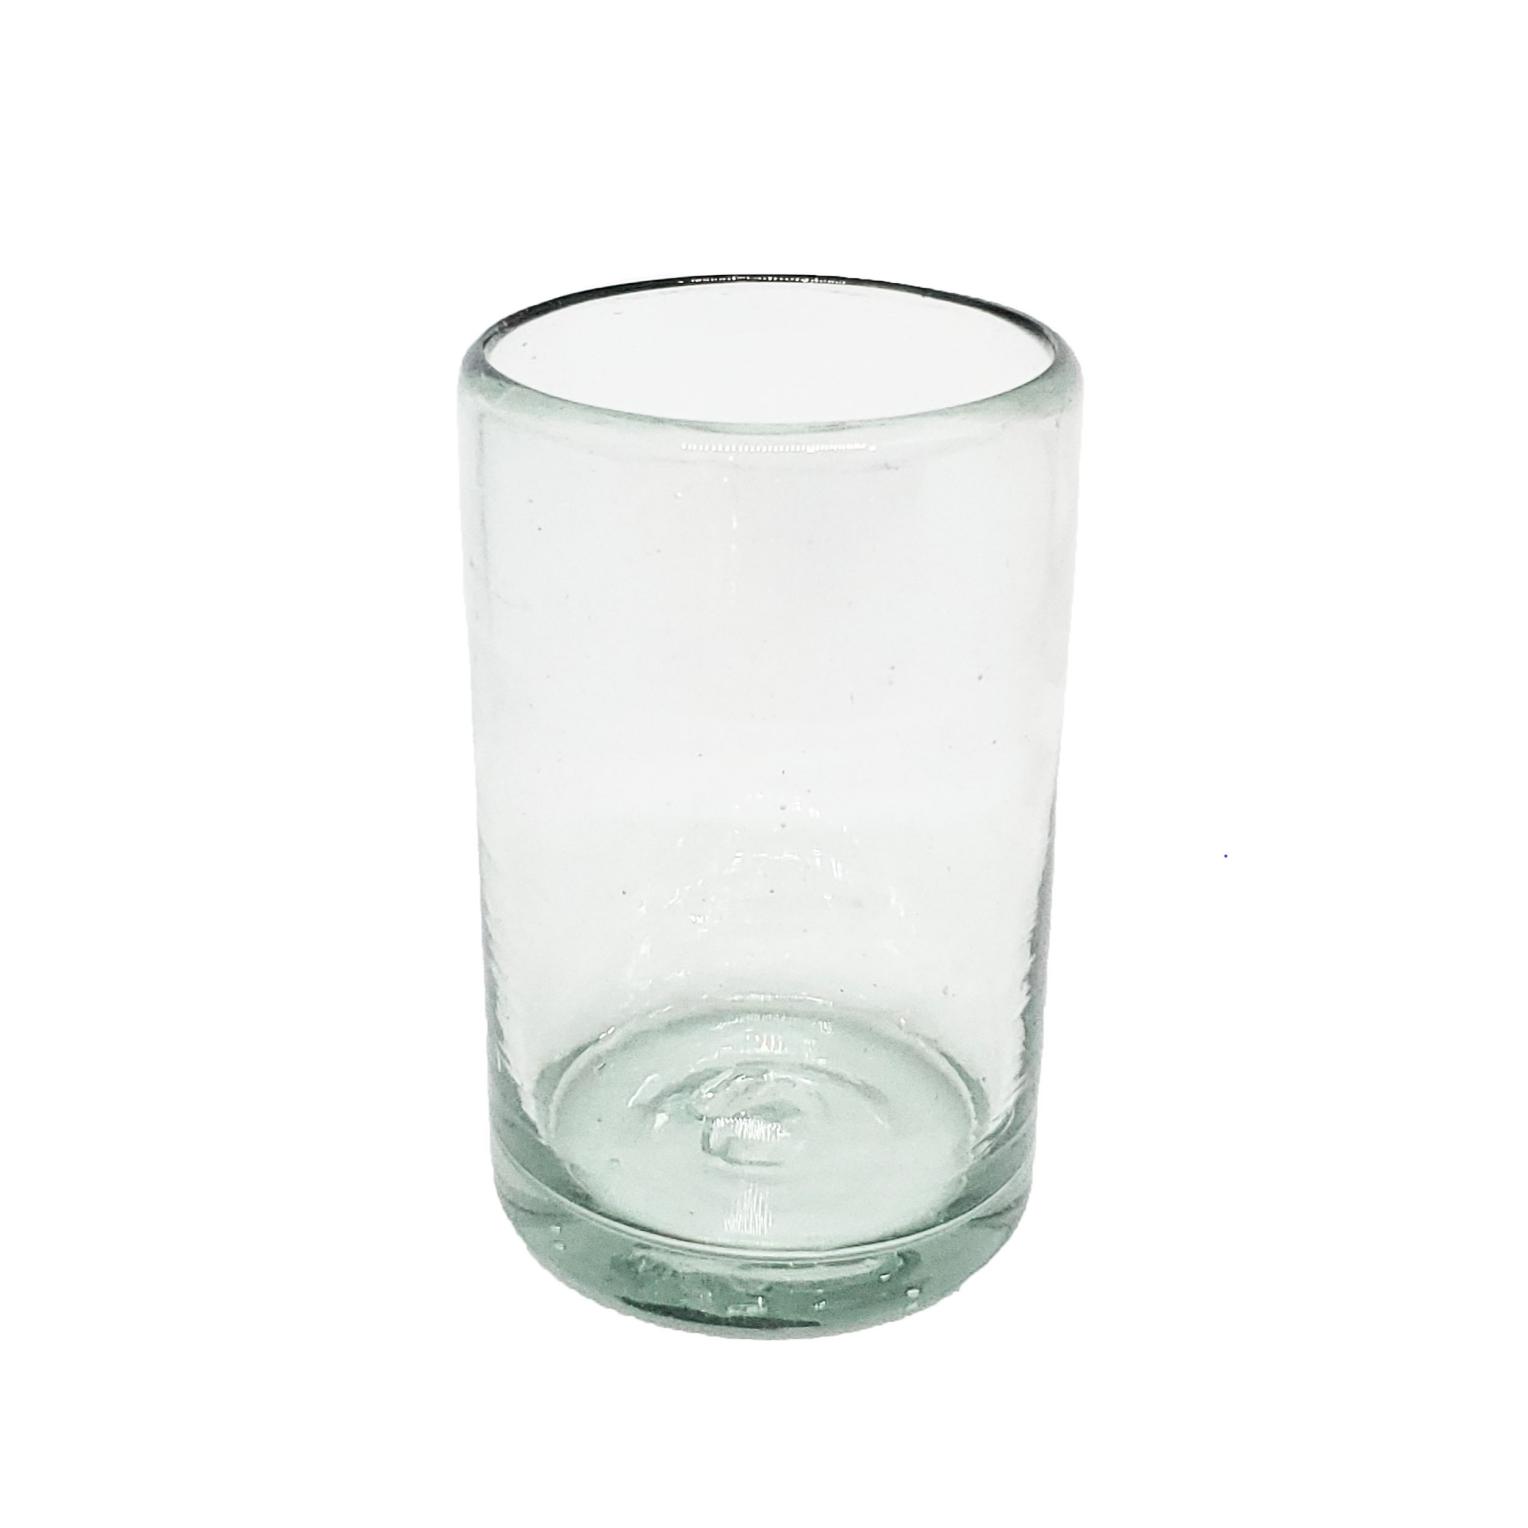 VIDRIO SOPLADO / Juego de 6 vasos Jugo 9oz Transparentes / stos artesanales vasos le darn un toque clsico a su bebida favorita.